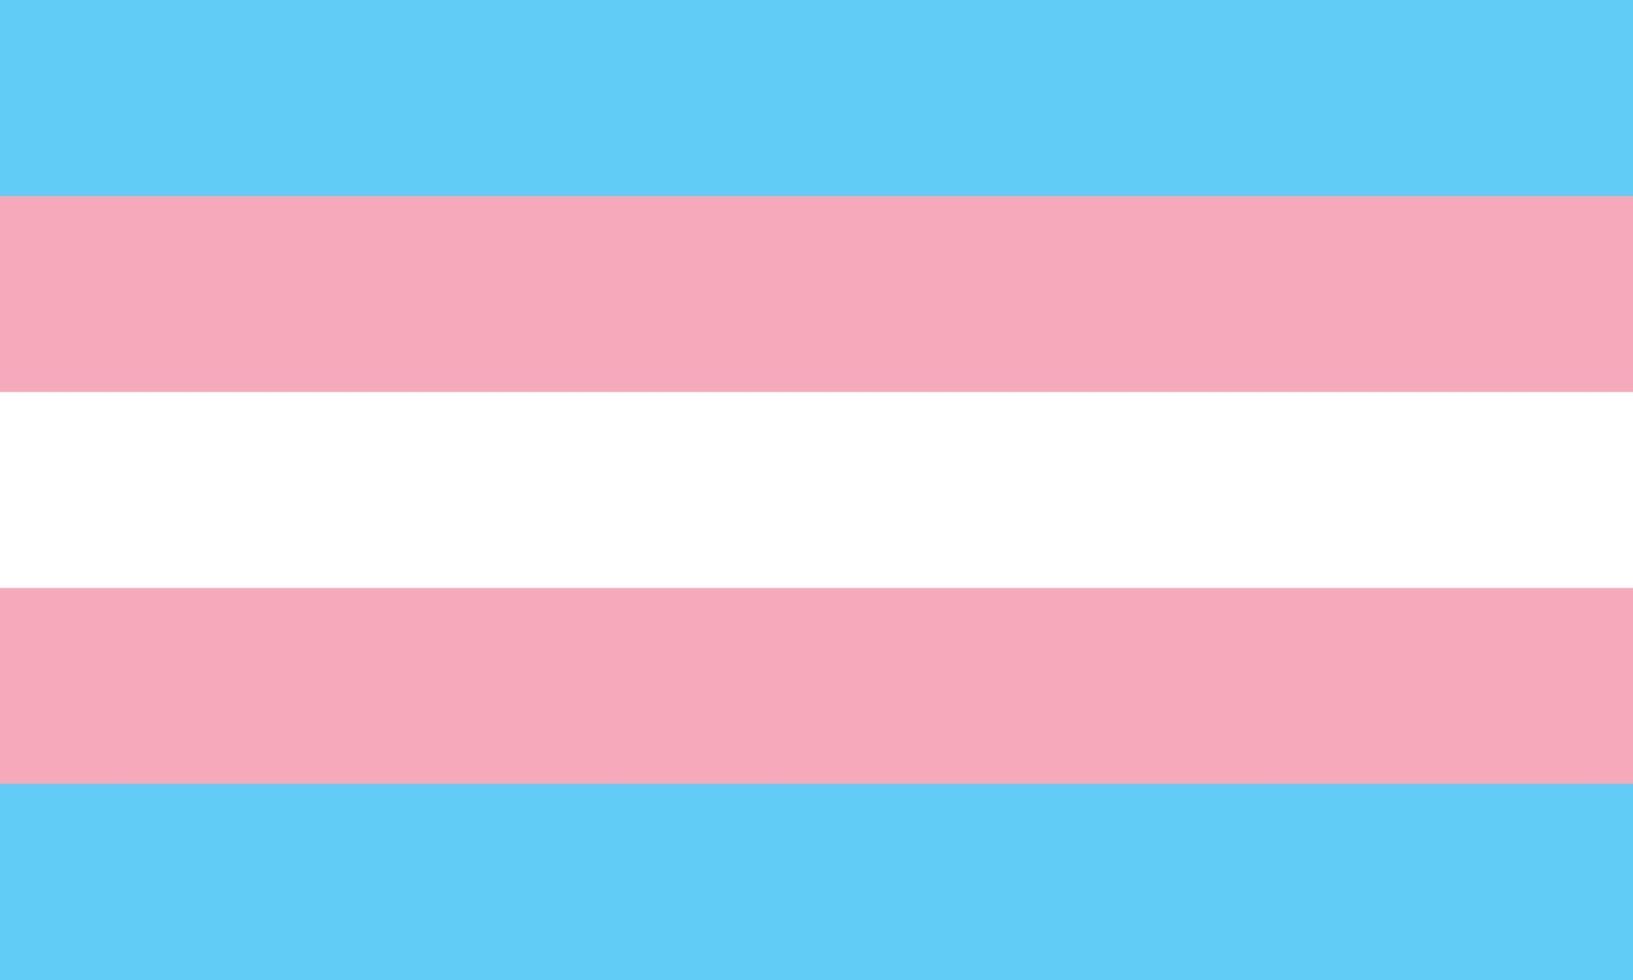 The transgender pride flag - light blue, pink and white pentacolour striped pride flag, symbol of the transgender community. Part of the LGBT series symbols vector